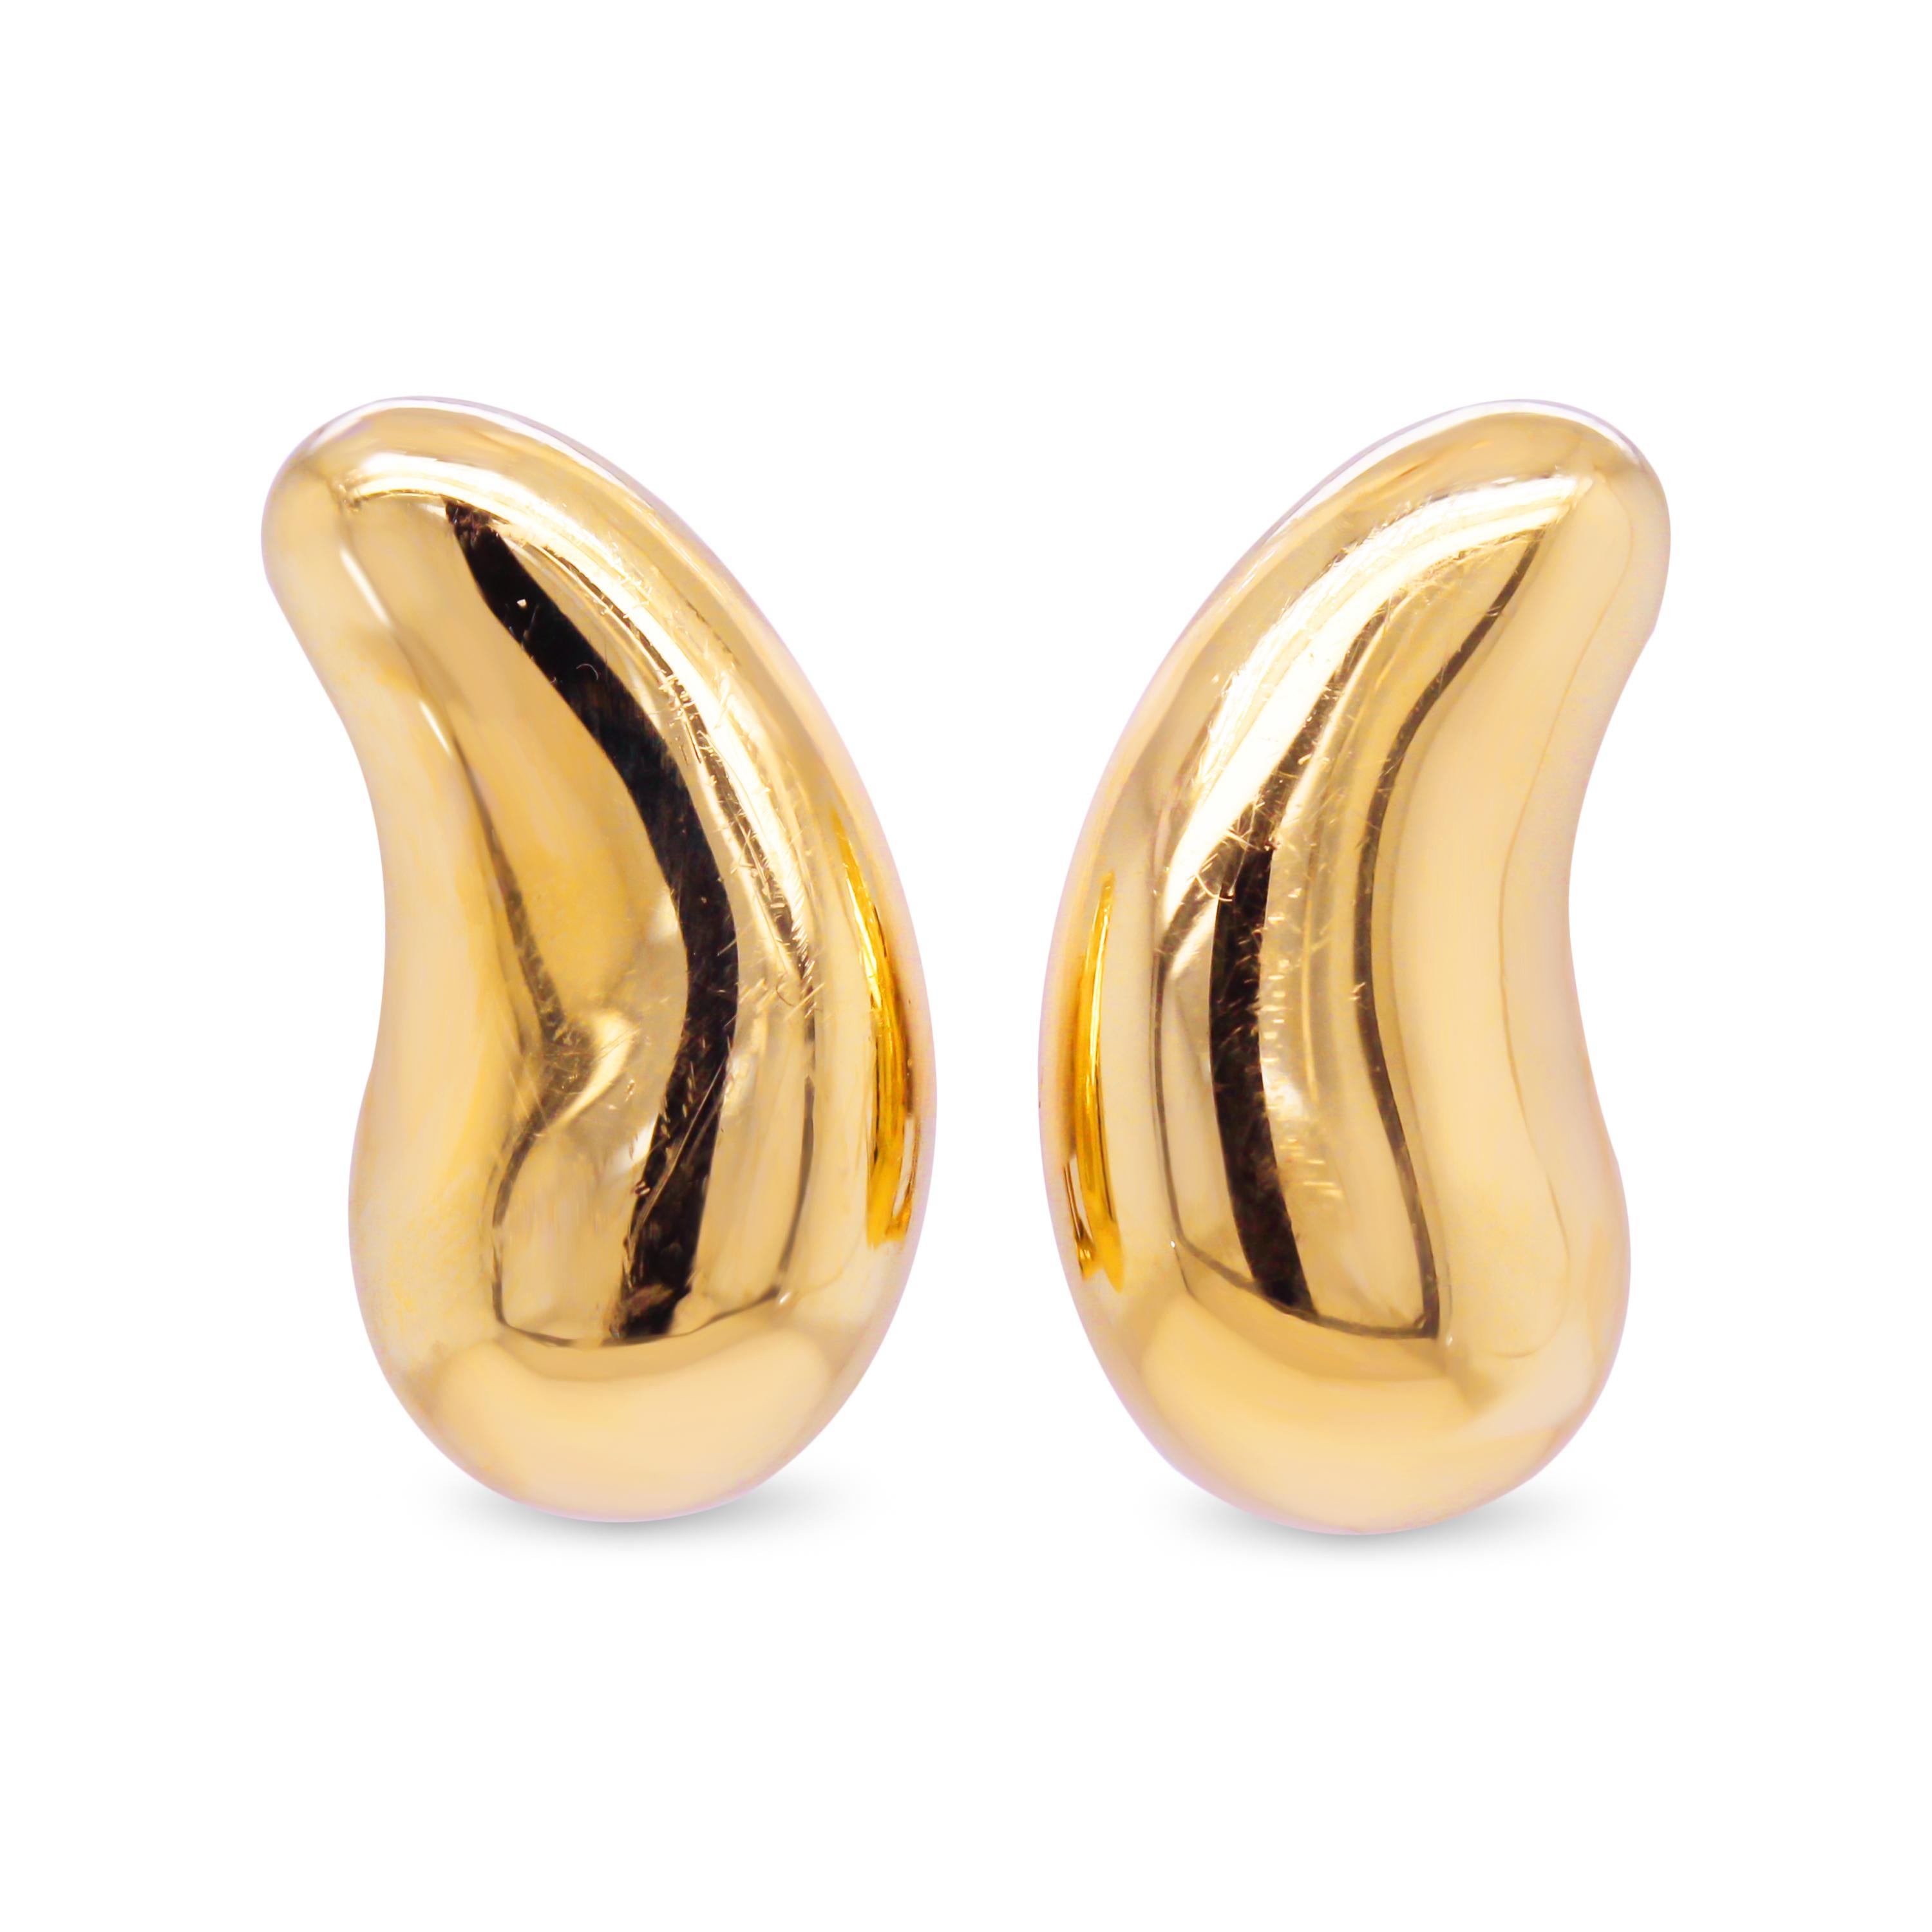 Tiffany & Co. Elsa Peretti 18 Karat Yellow Gold Bean Earrings

Earrings measure 0.83 inch by 0.43 inch. 

Signed Tiffany & Co. Elsa Peretti